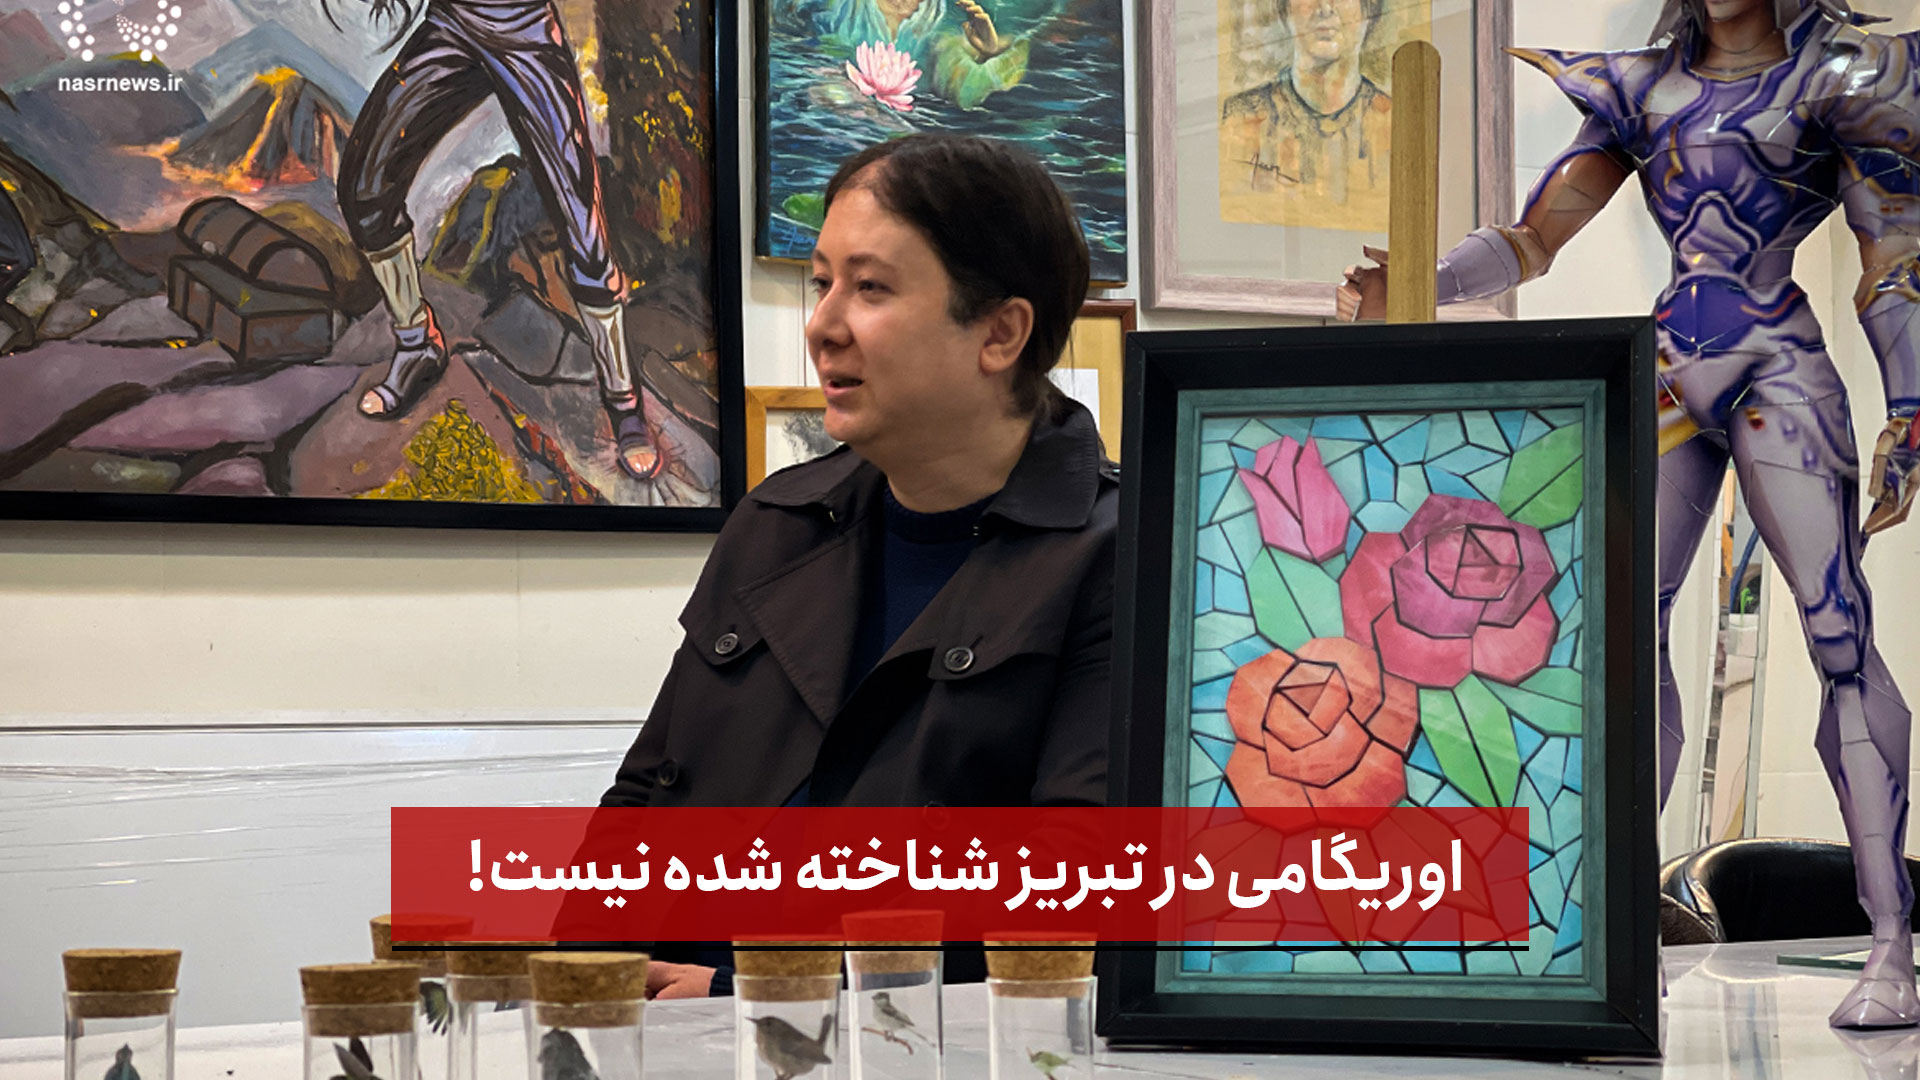 فیلم | اوریگامی در تبریز شناخته شده نیست!